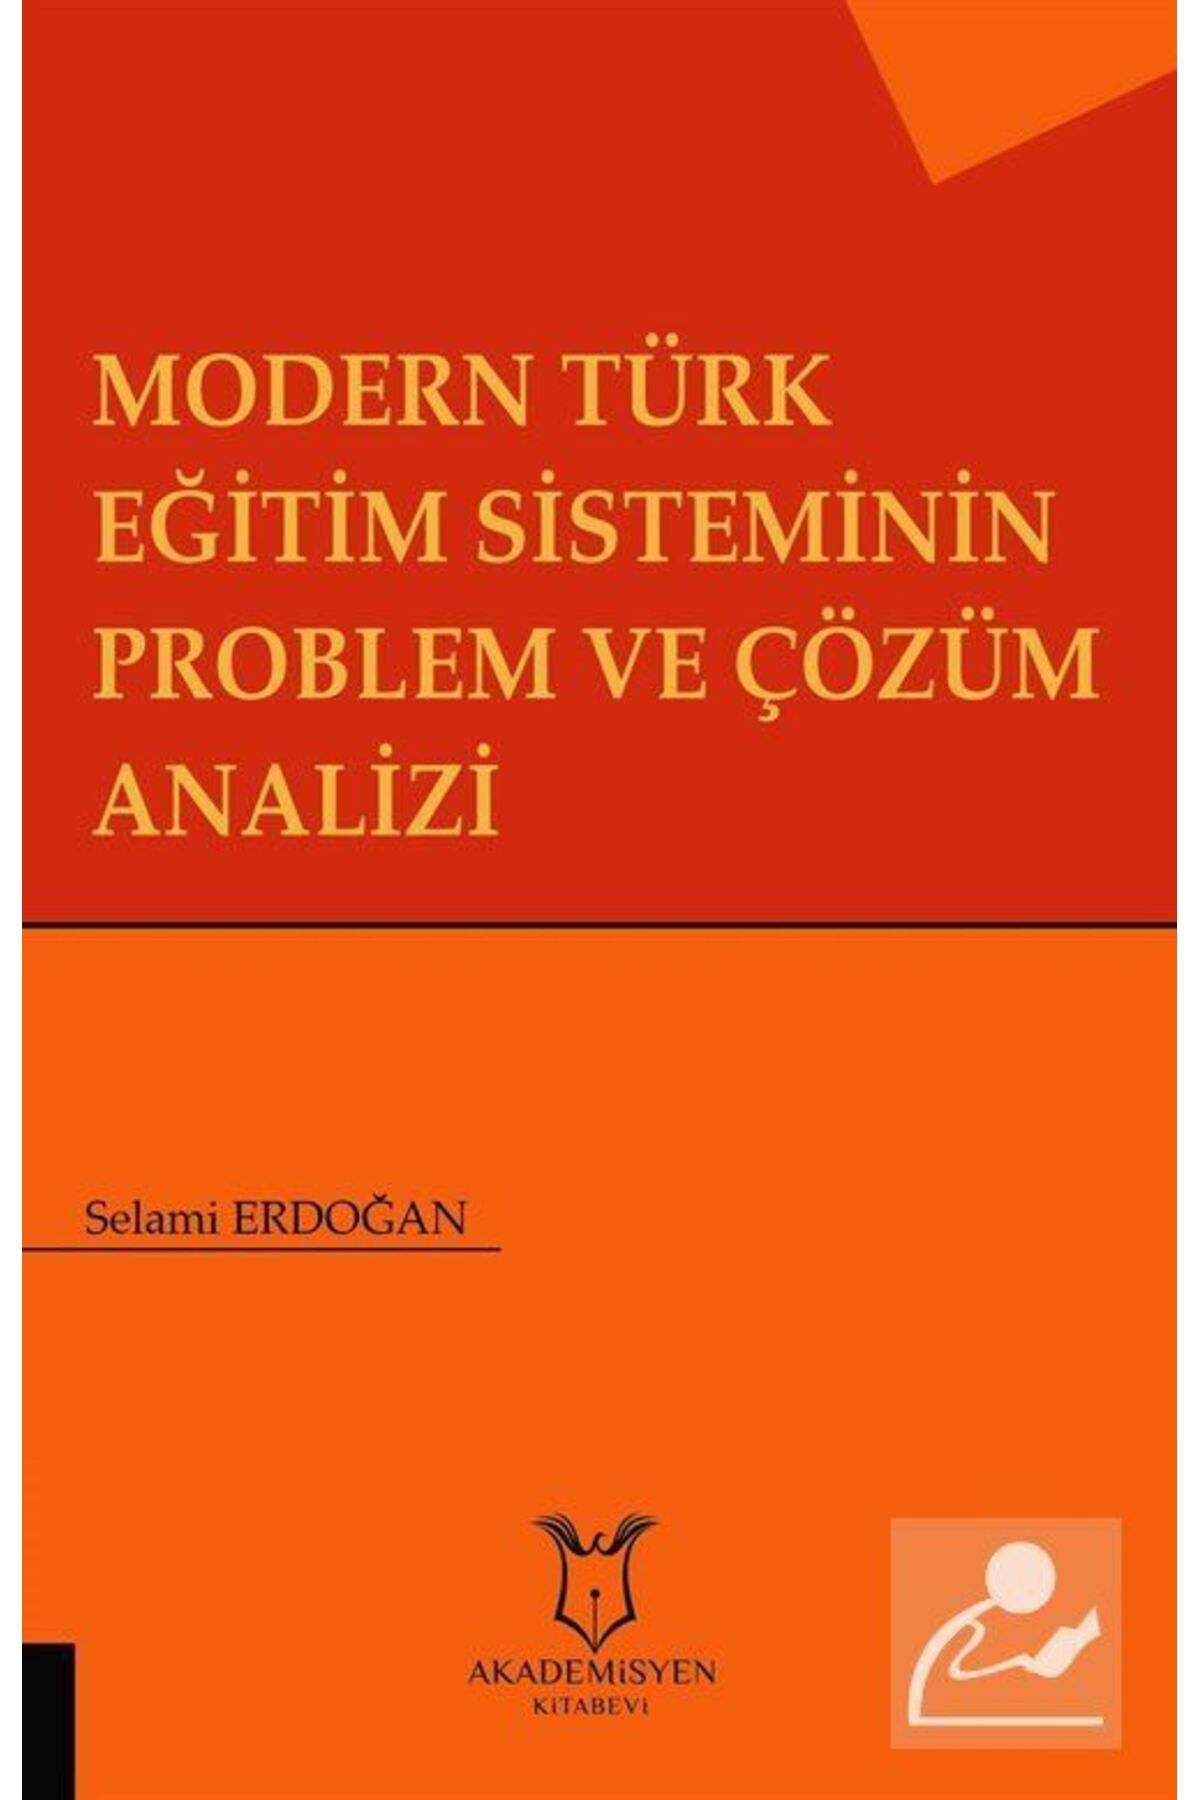 Akademisyen Kitabevi Modern Türk Eğitim Sisteminin Problem Ve Çözüm Analizi